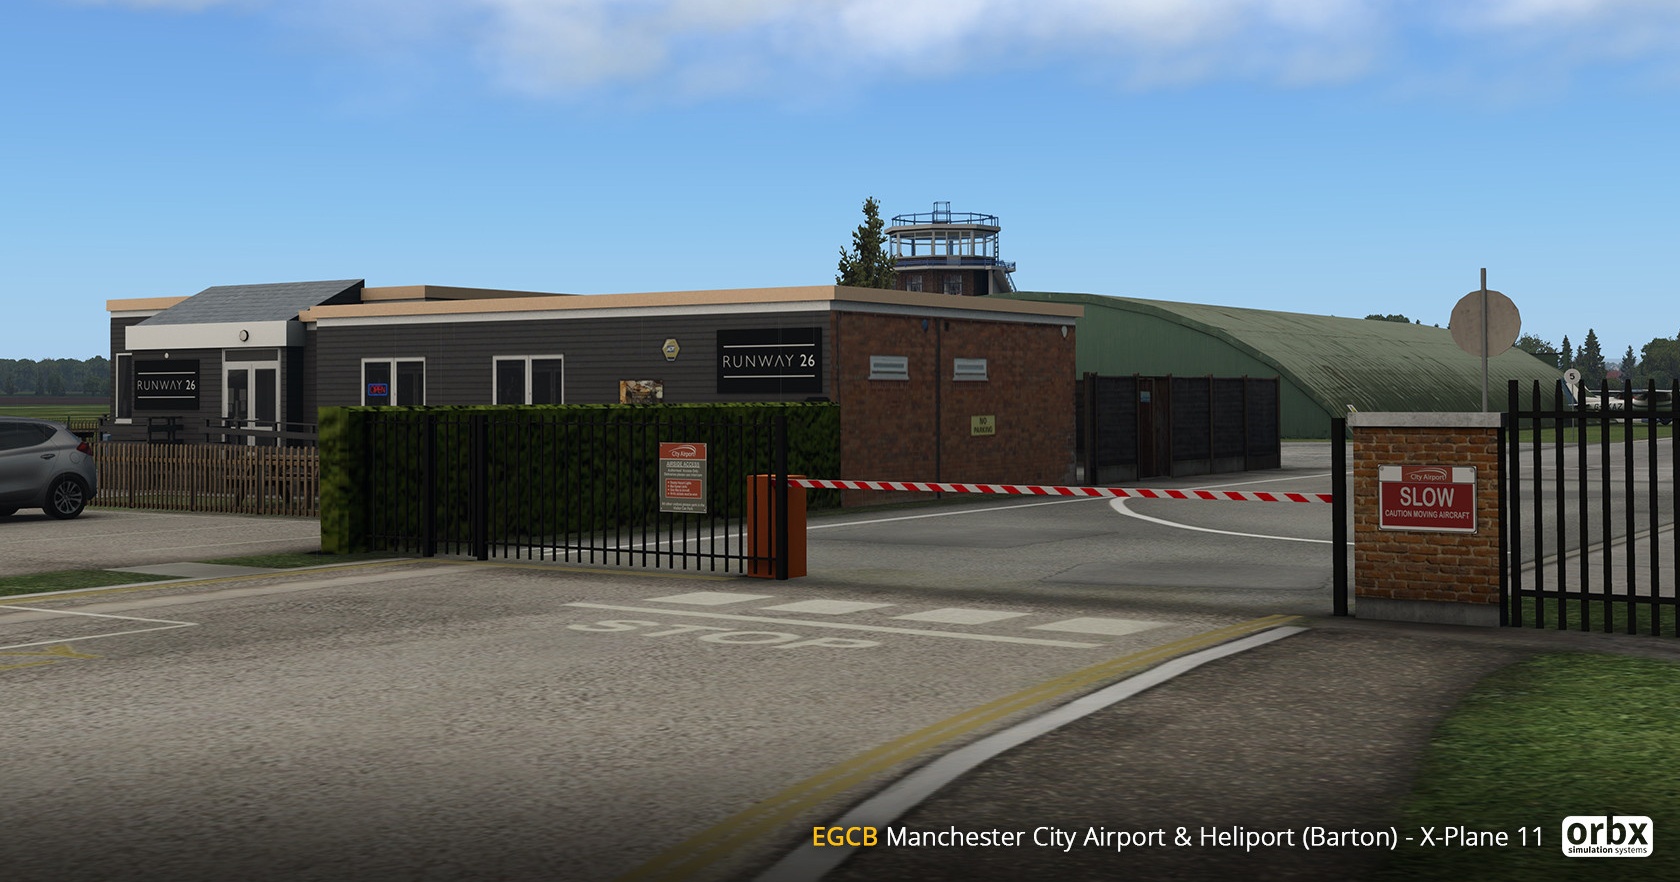 ORBX Manchester City Airport Barton Heliport für X-Plane 11